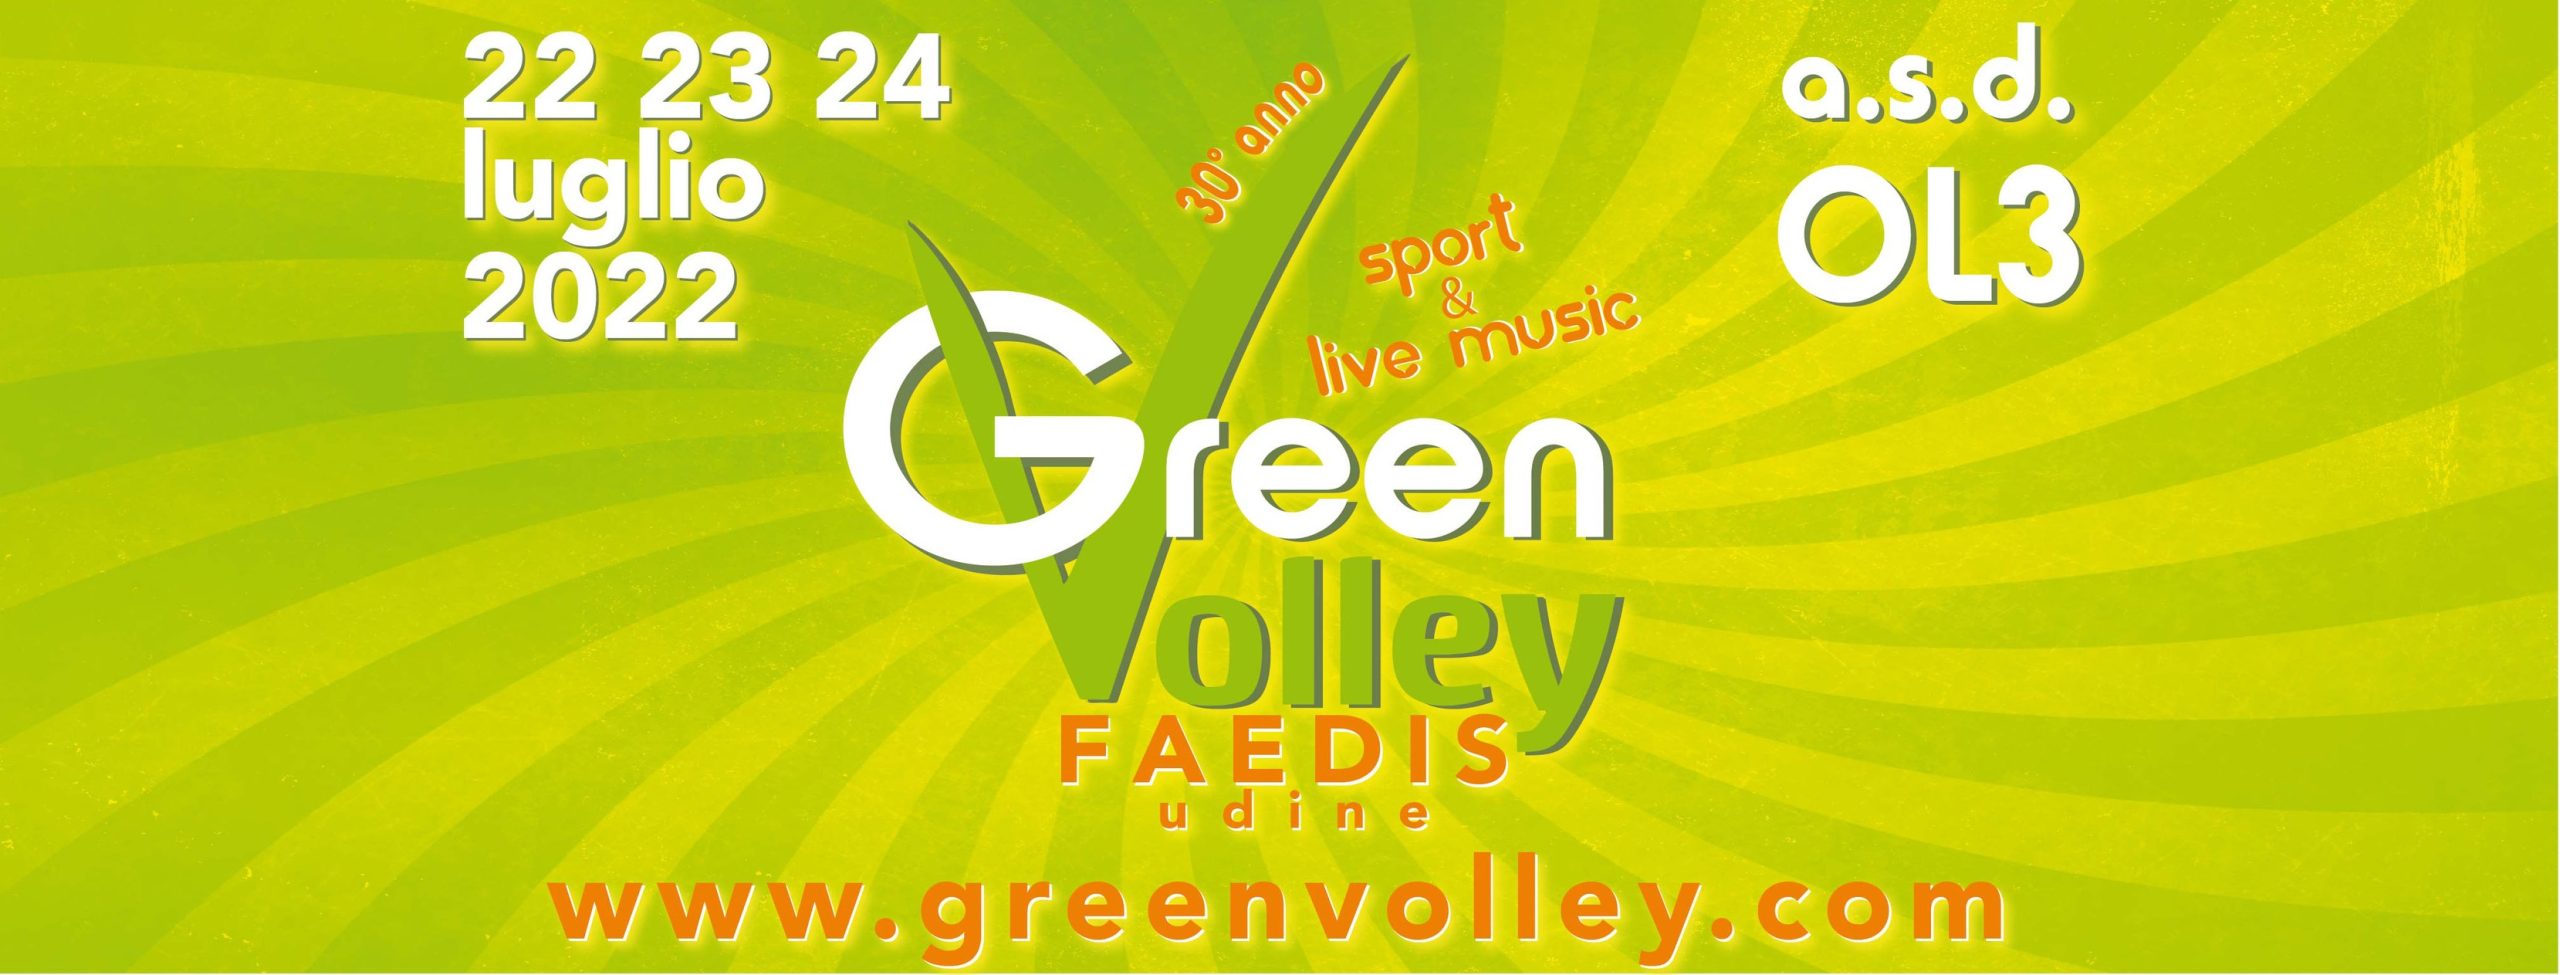 Green Volley Faedis 2022, Faedis